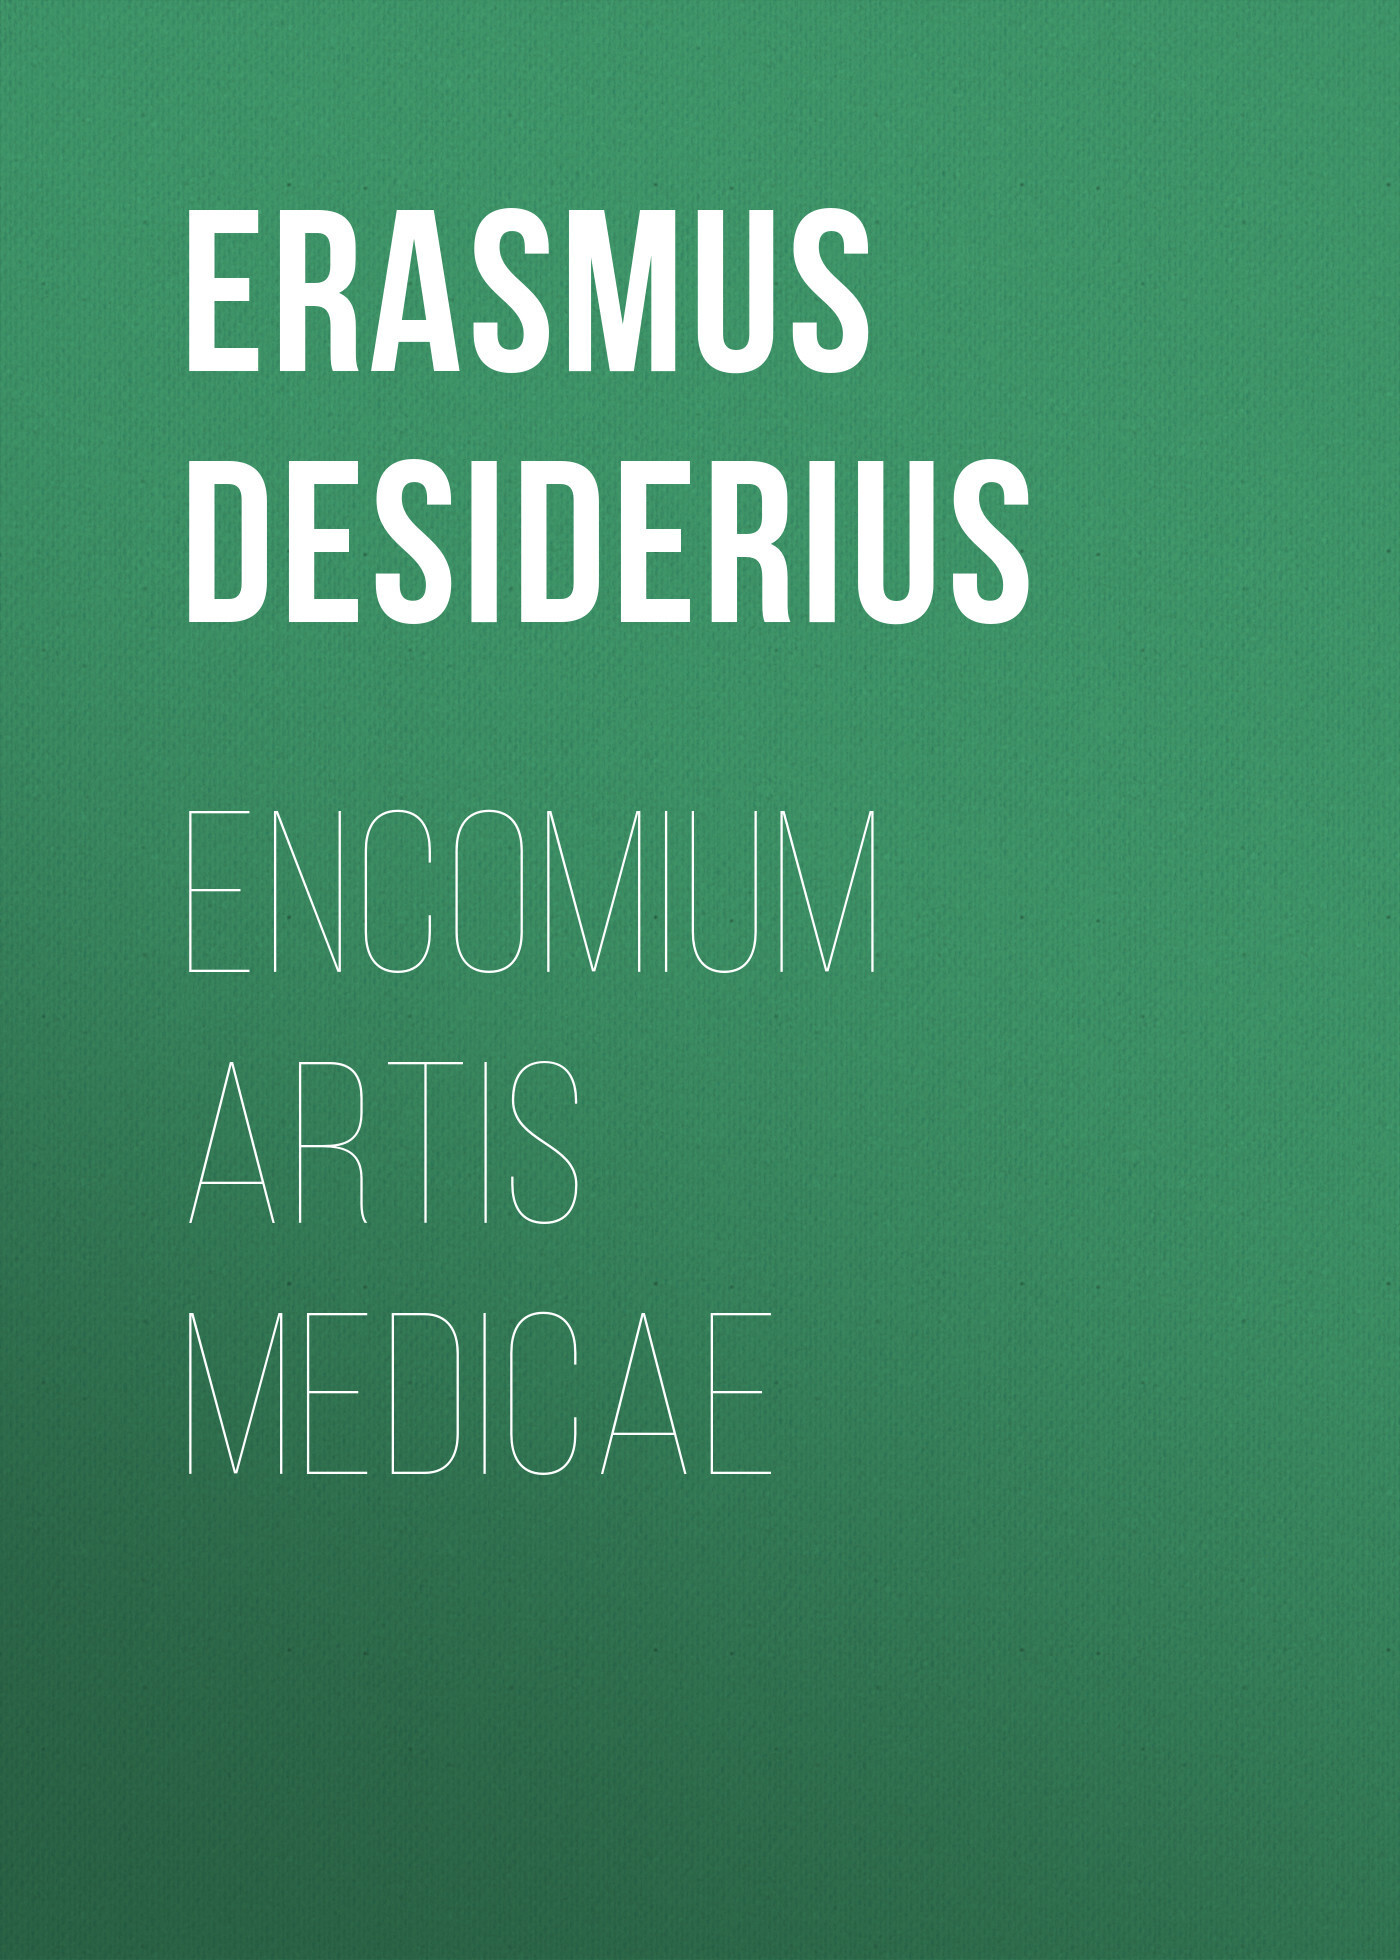 Книга Encomium artis medicae из серии , созданная Desiderius Erasmus, может относится к жанру Зарубежная старинная литература, Философия, Медицина, Зарубежная образовательная литература. Стоимость электронной книги Encomium artis medicae с идентификатором 36097389 составляет 0 руб.